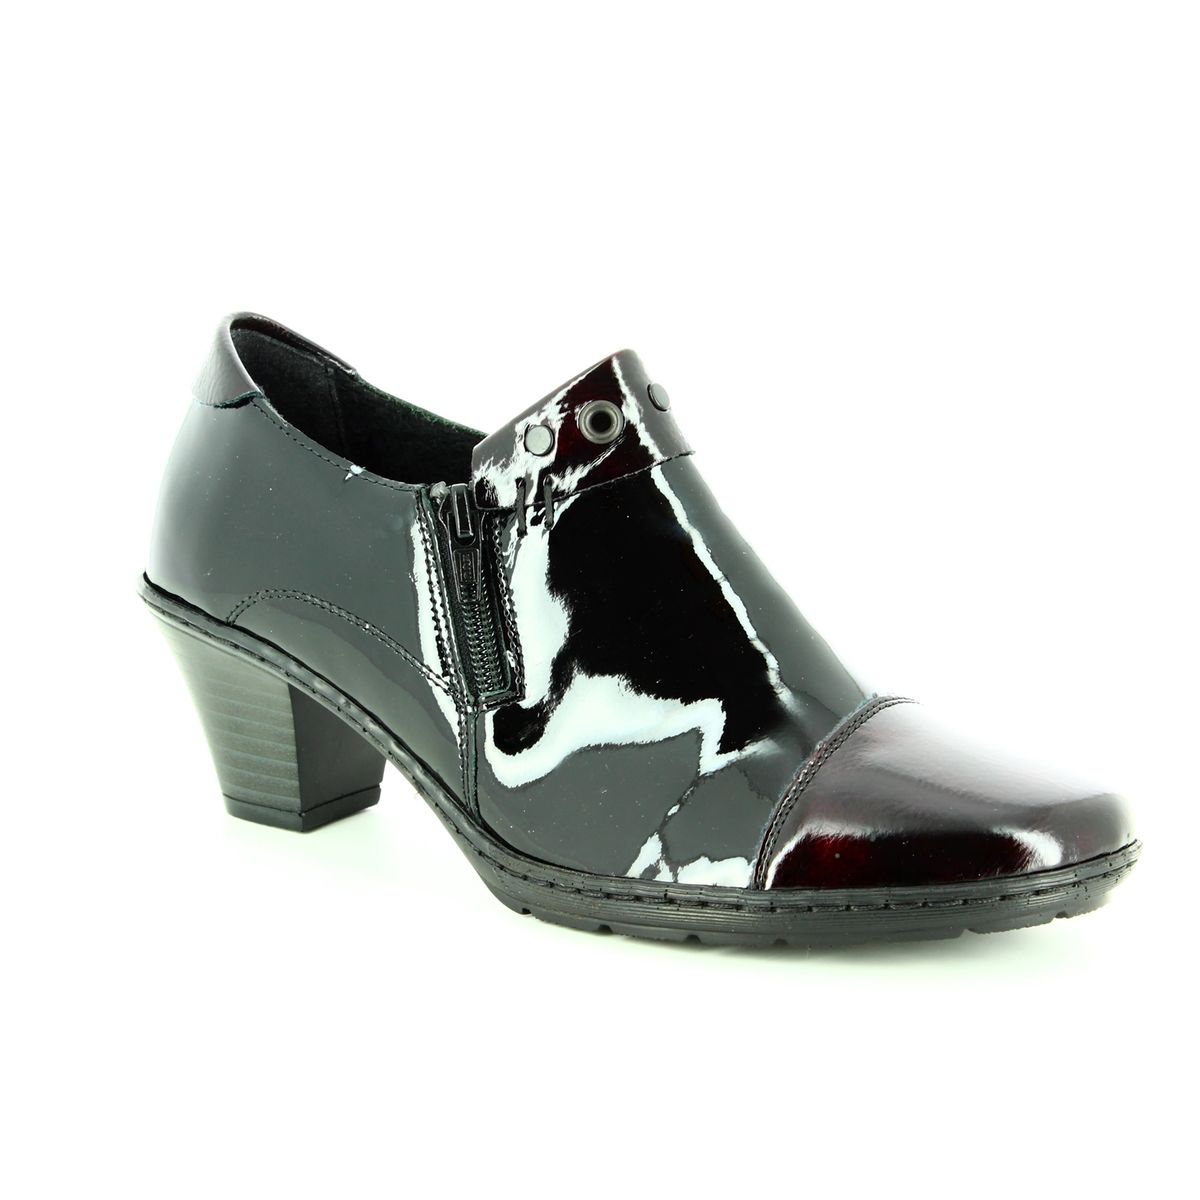 Rieker 57161-36 Black Patent shoe-boots